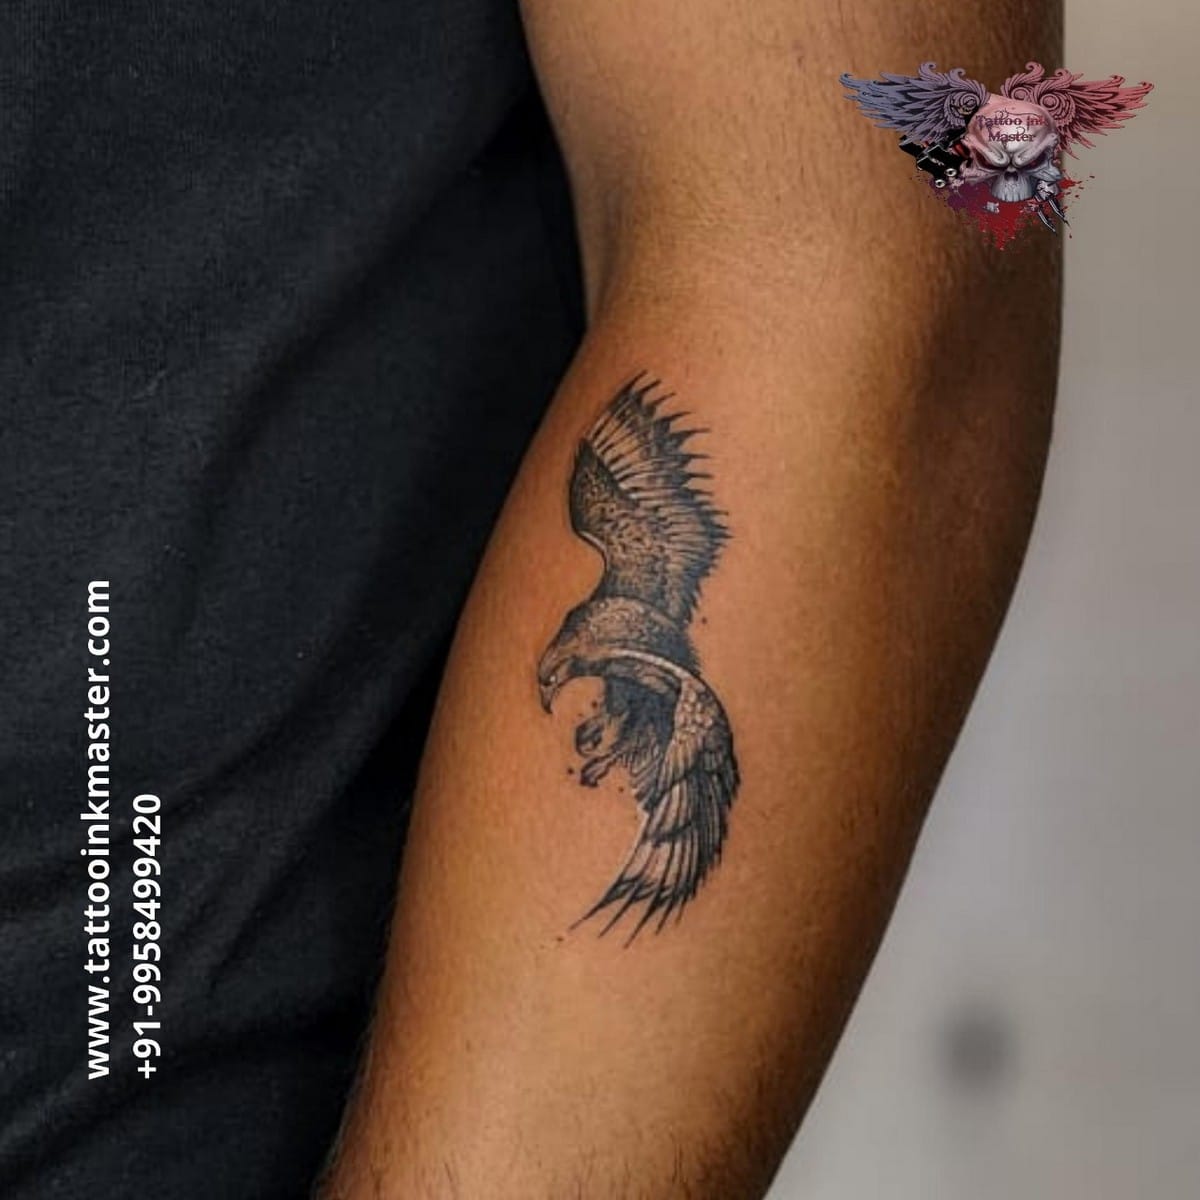 Back Shoulder Hawk Tattoo - Best Tattoo Ideas Gallery